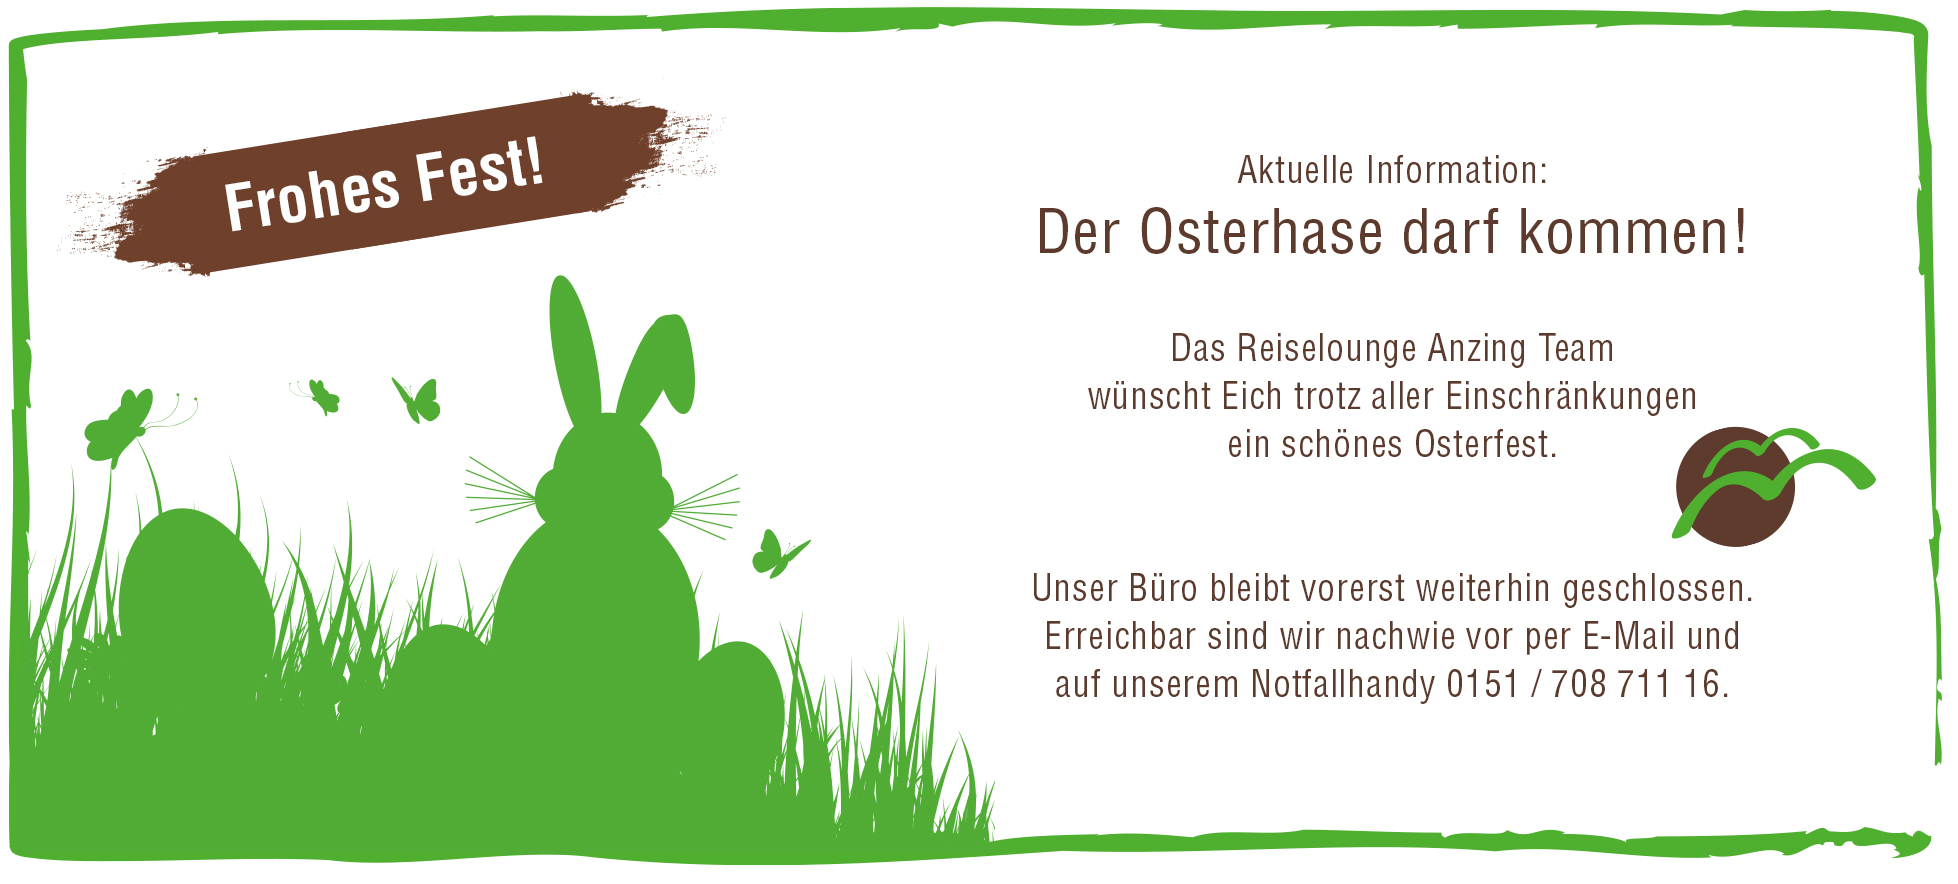 Wir wünschen frohe Ostertage!